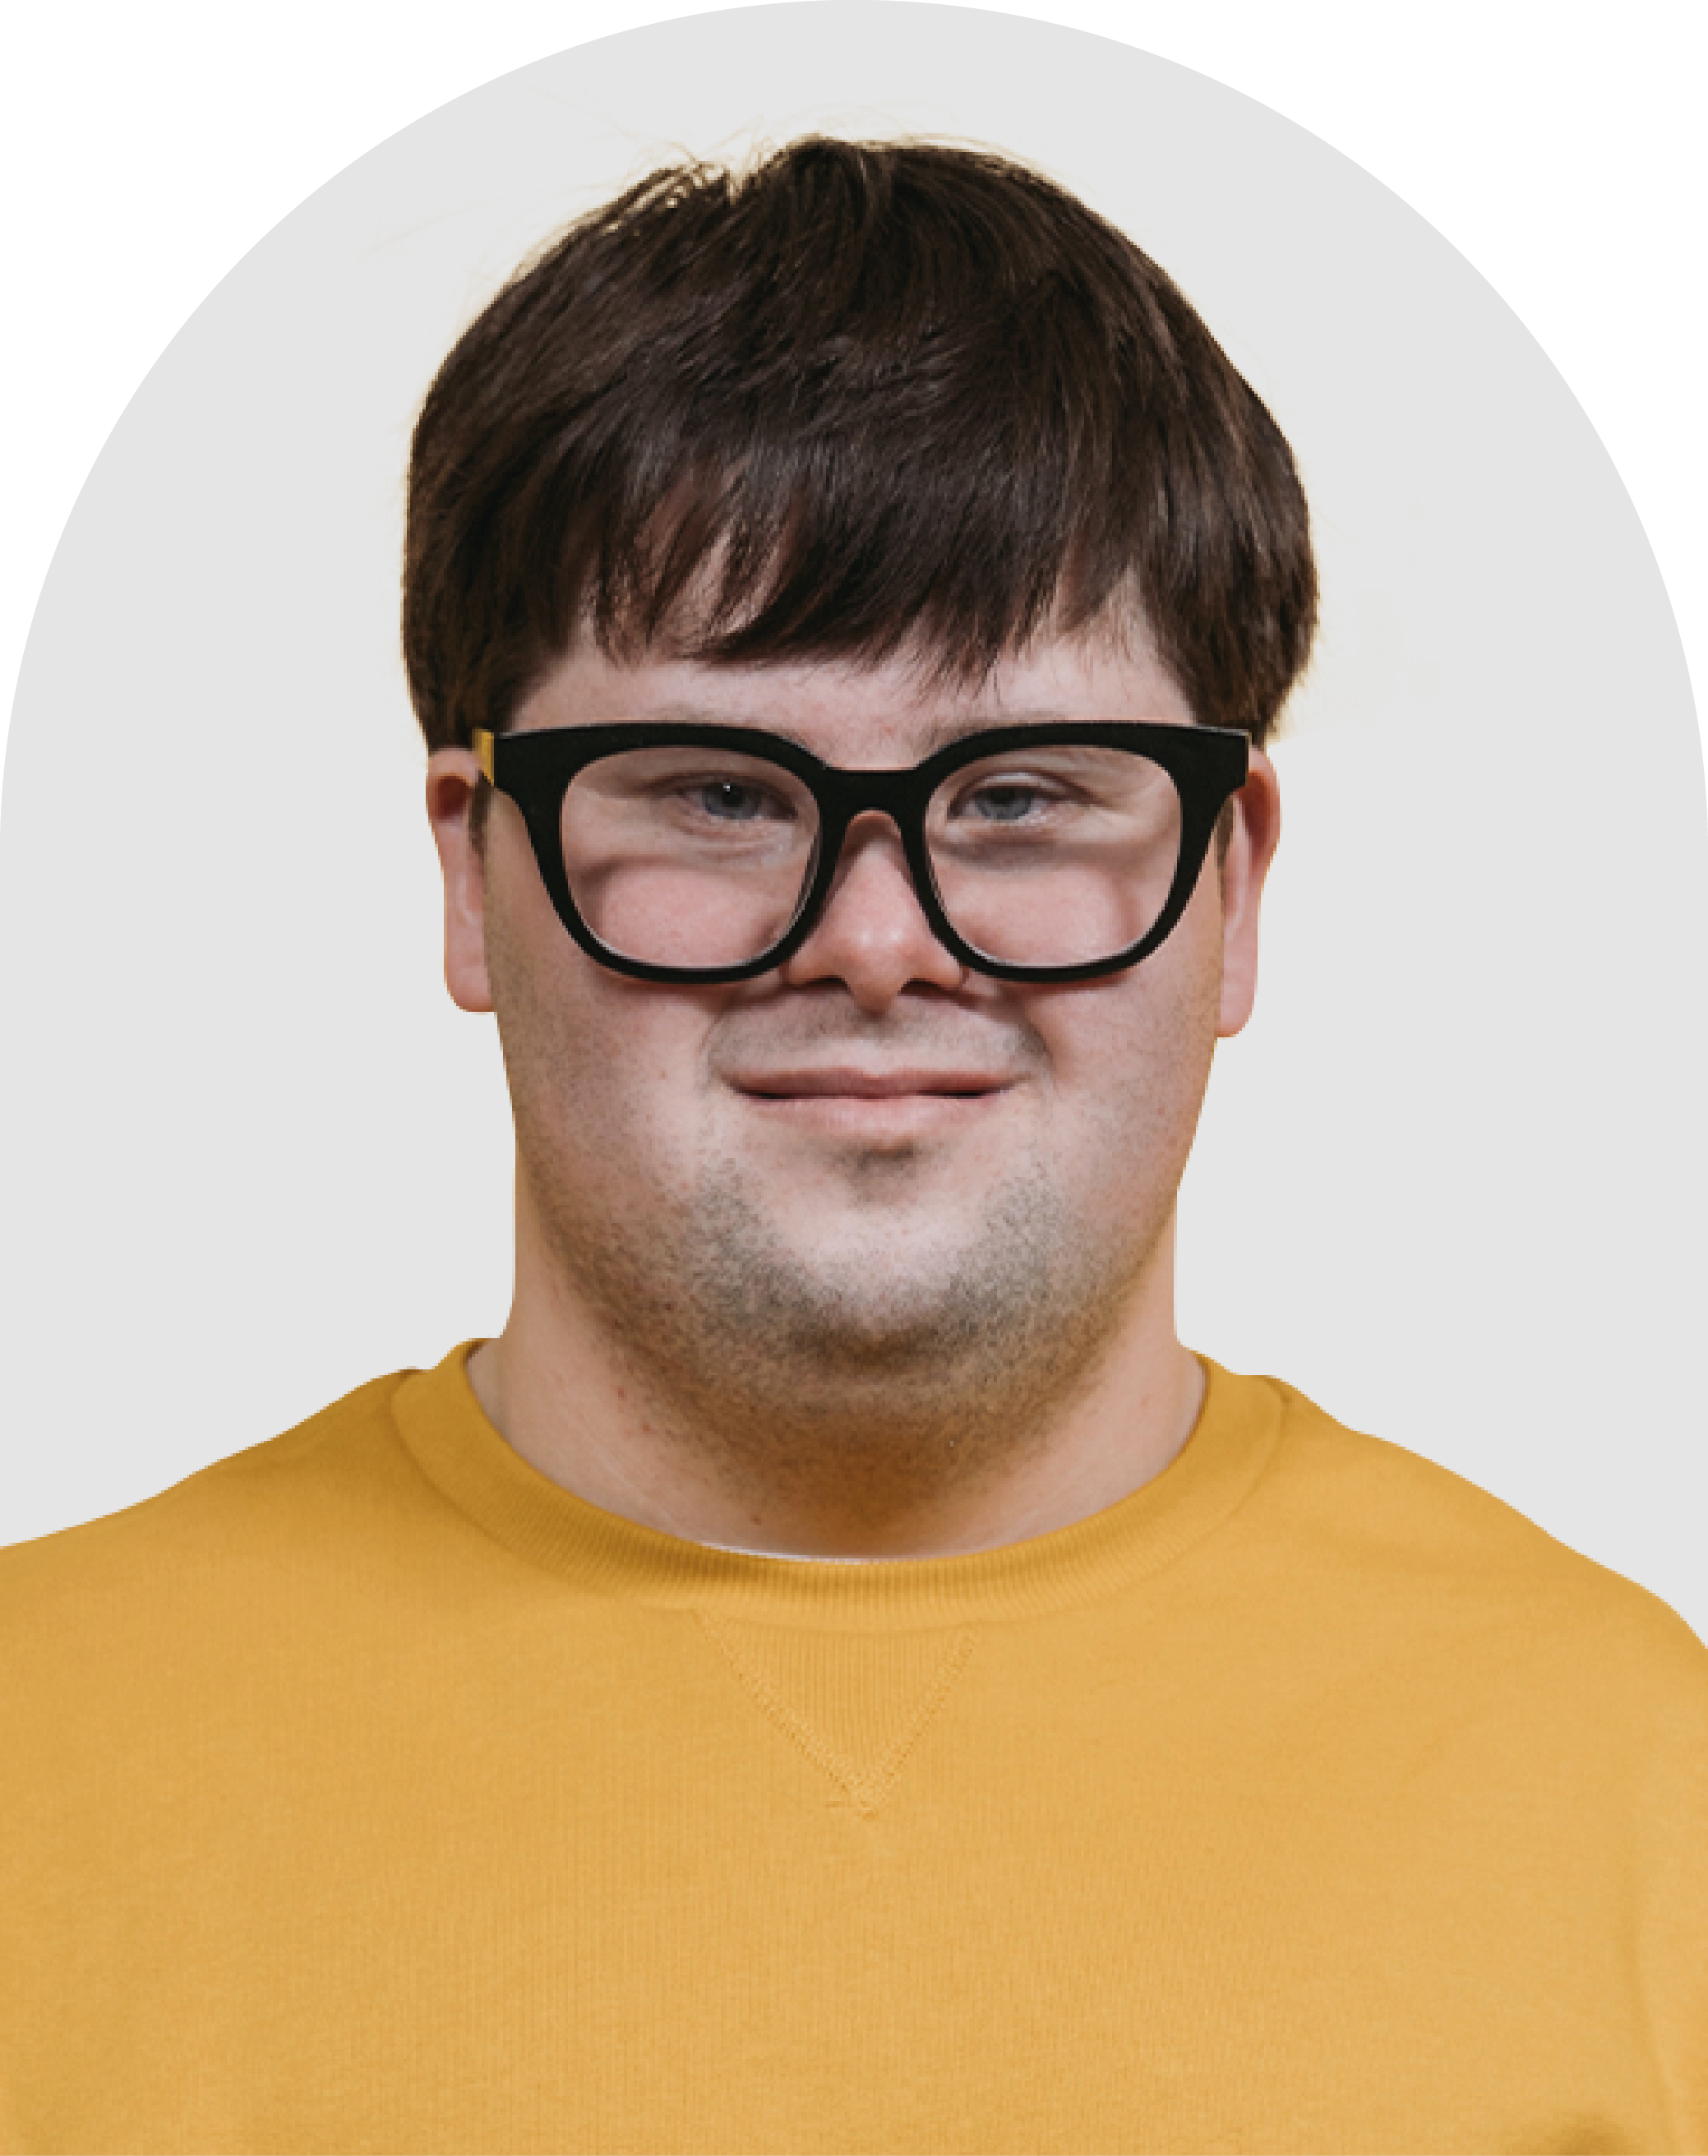 Foto de um homem branco com síndrome de down. Ele usa óculos de grau preto e uma camiseta amarela.